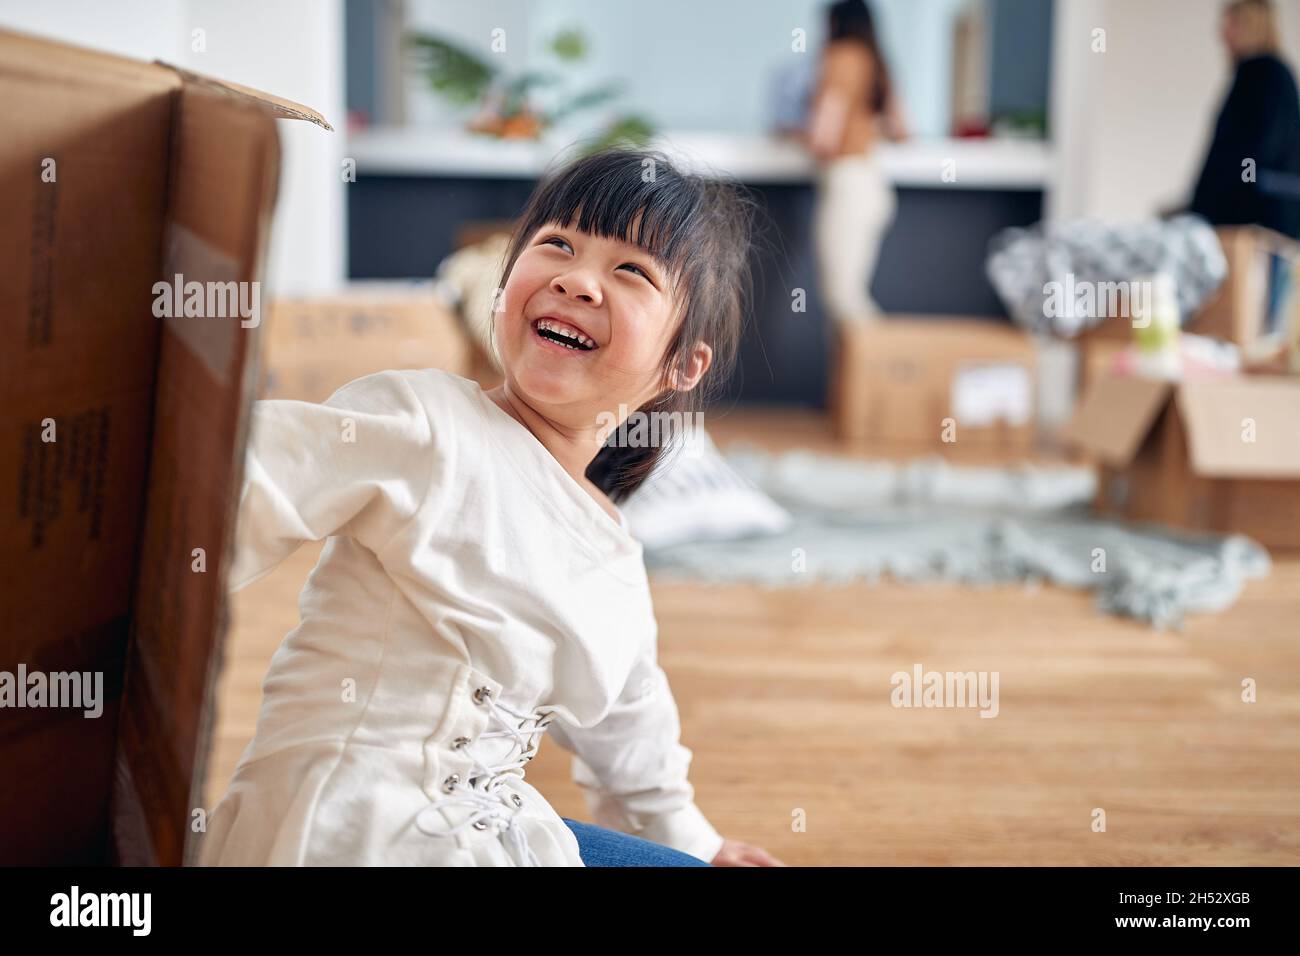 Ein kleines Mädchen spielt auf dem Boden in einer fröhlichen Atmosphäre in einem neuen Zuhause, in dem ihre Familie gerade eingezogen ist. Zuhause, Familie, Umzug Stockfoto